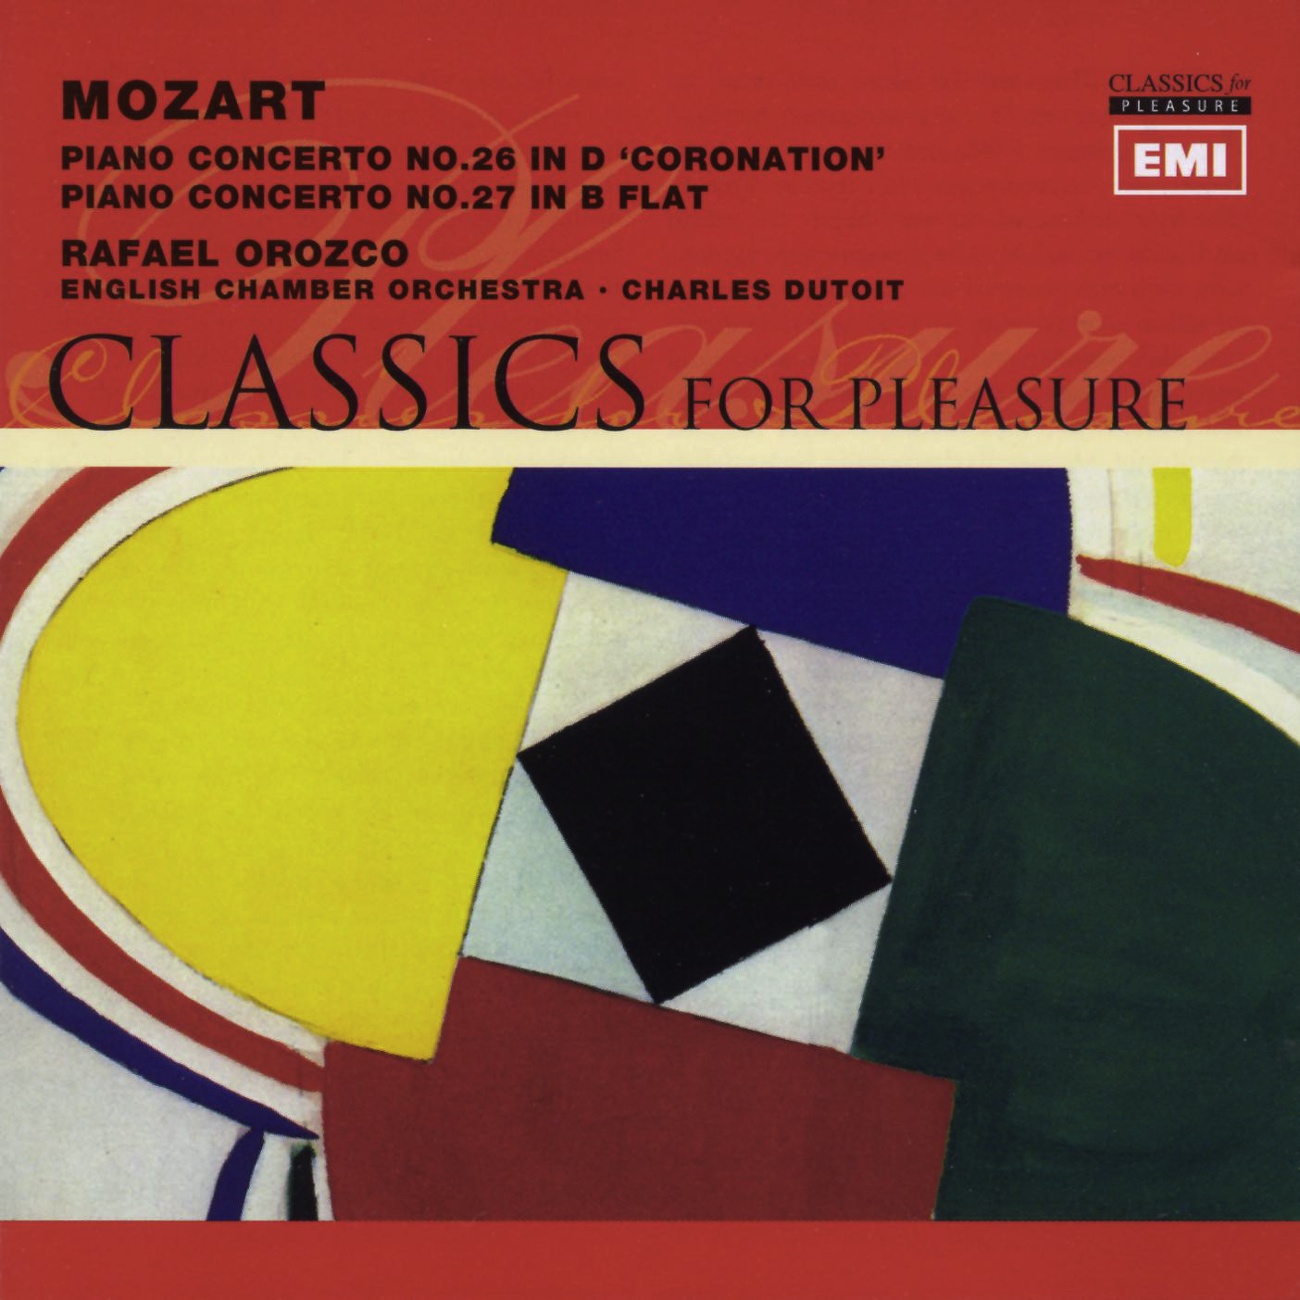 Piano Concerto No. 26 in D K537 'Coronation' (1981 Digital Remaster): III.     Allegretto